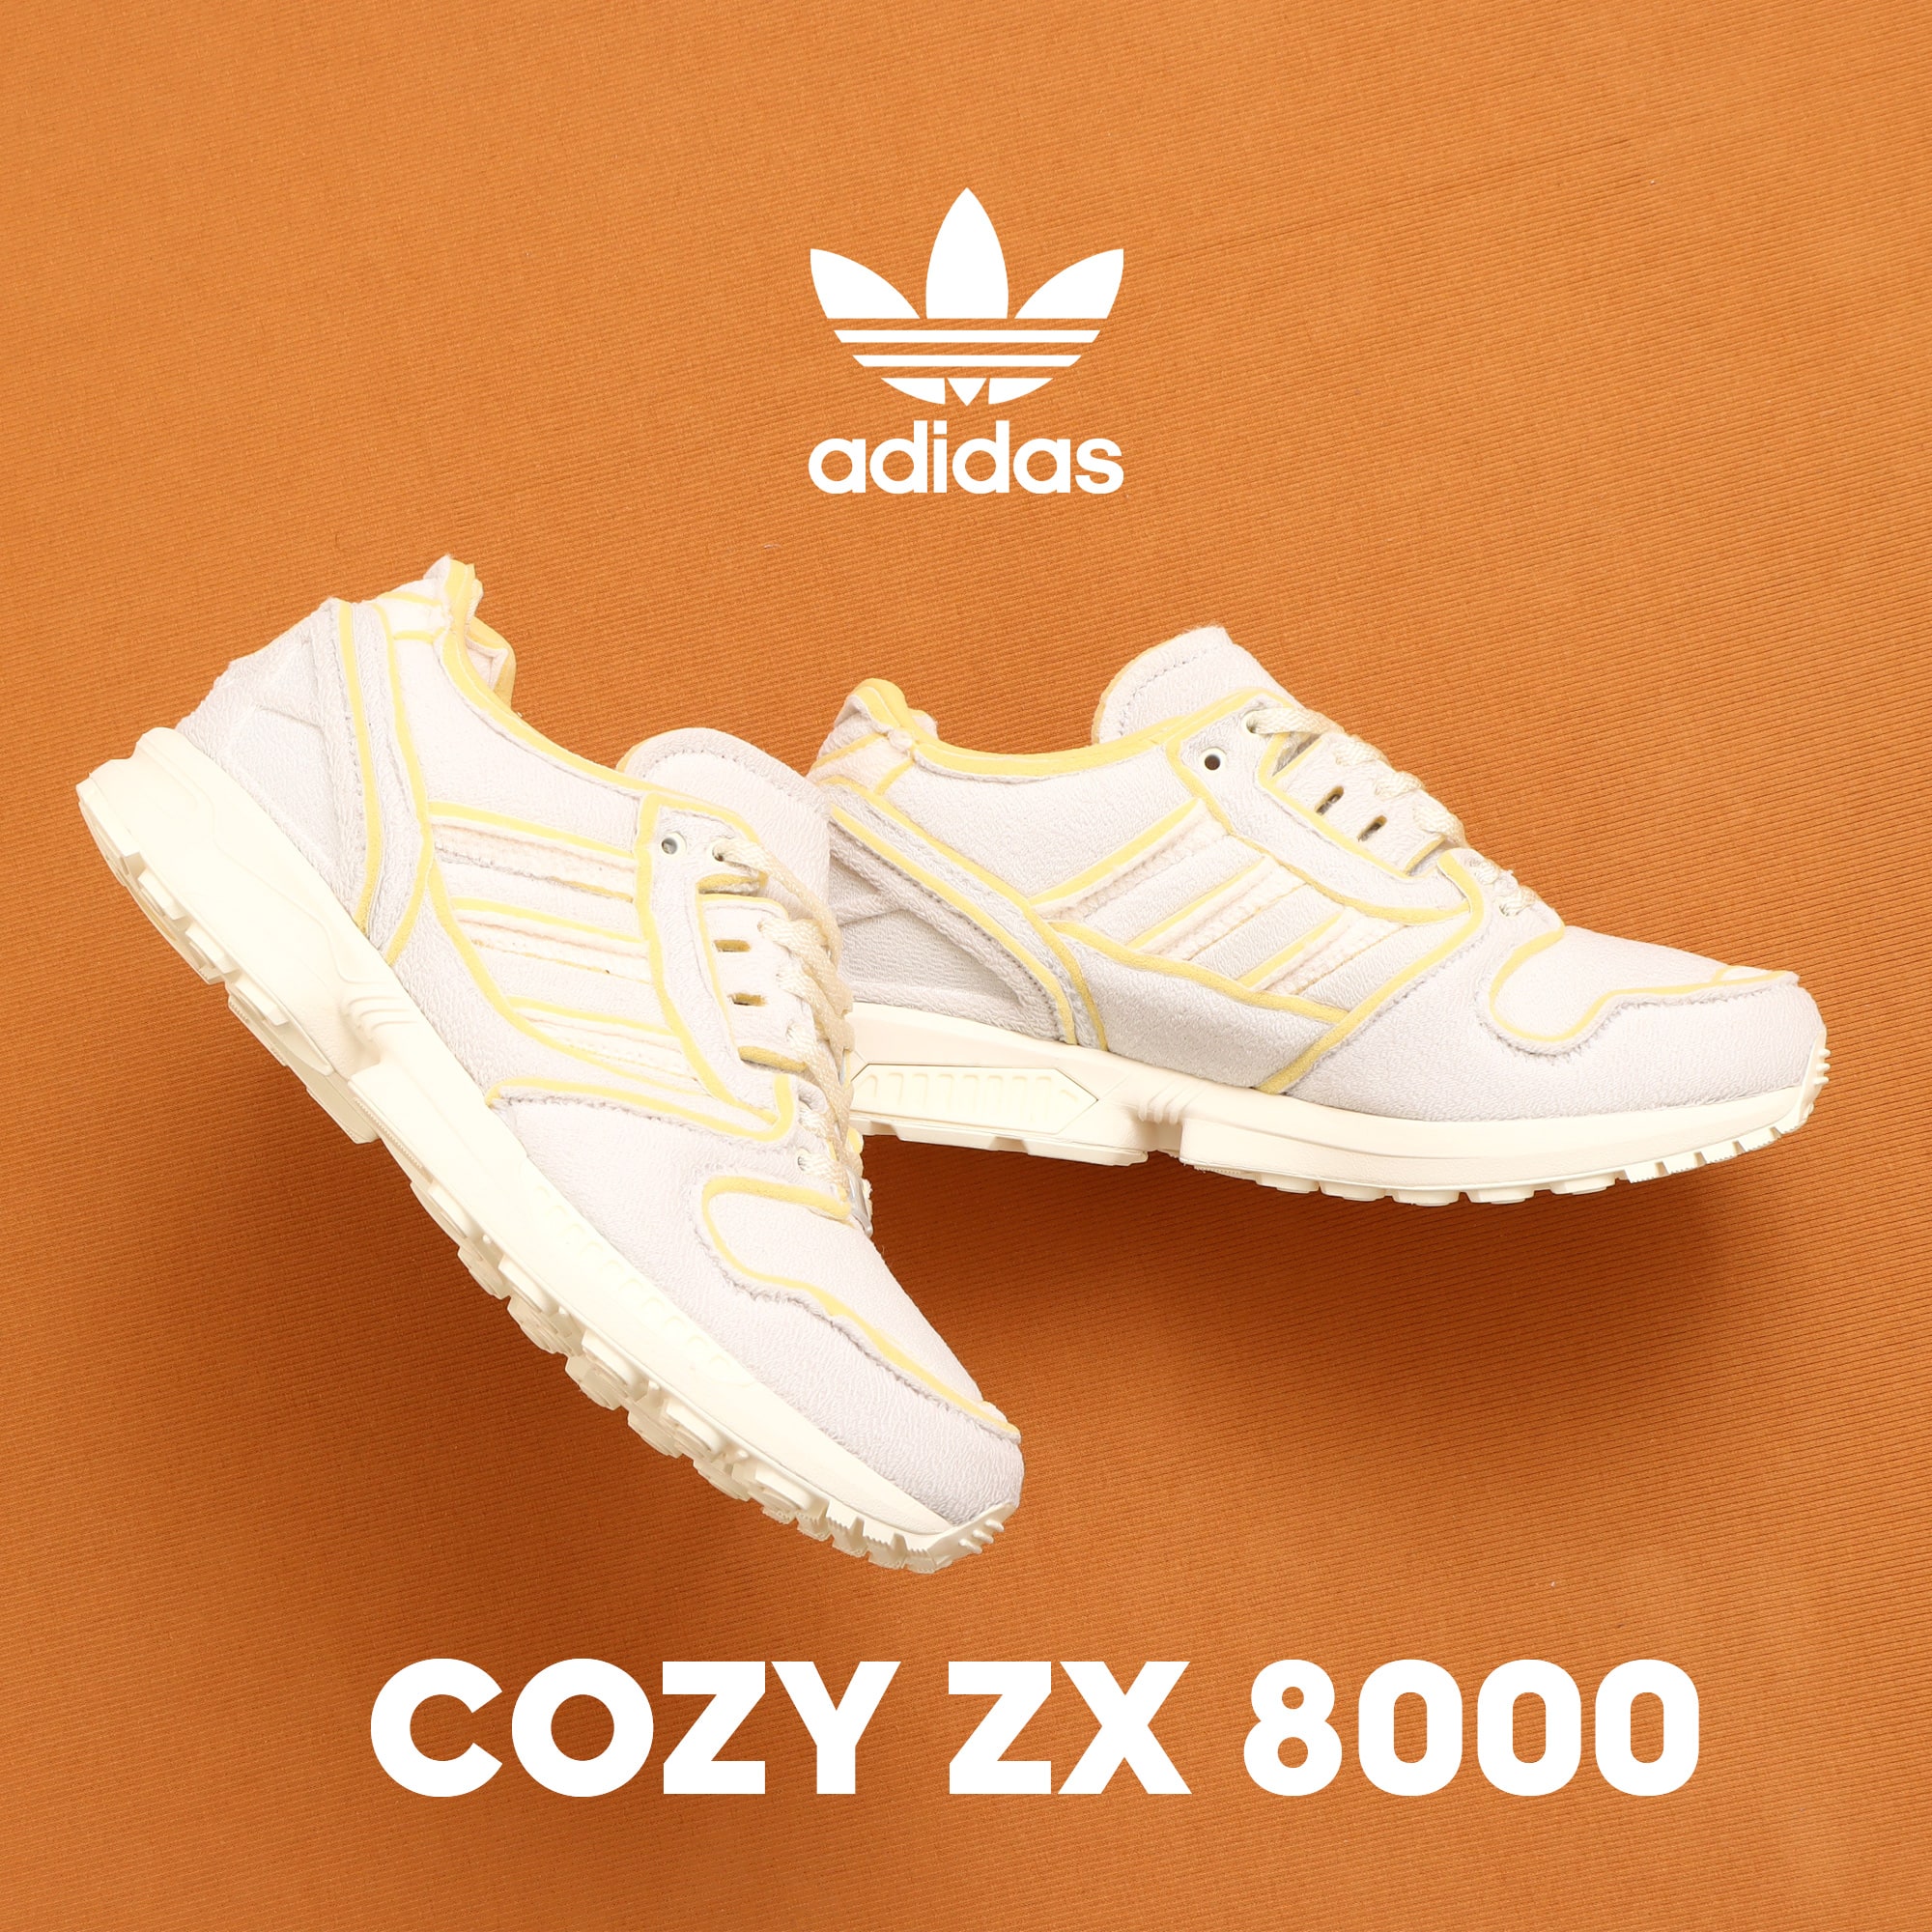 adidas ZX 8000 COZY 27.5㎝